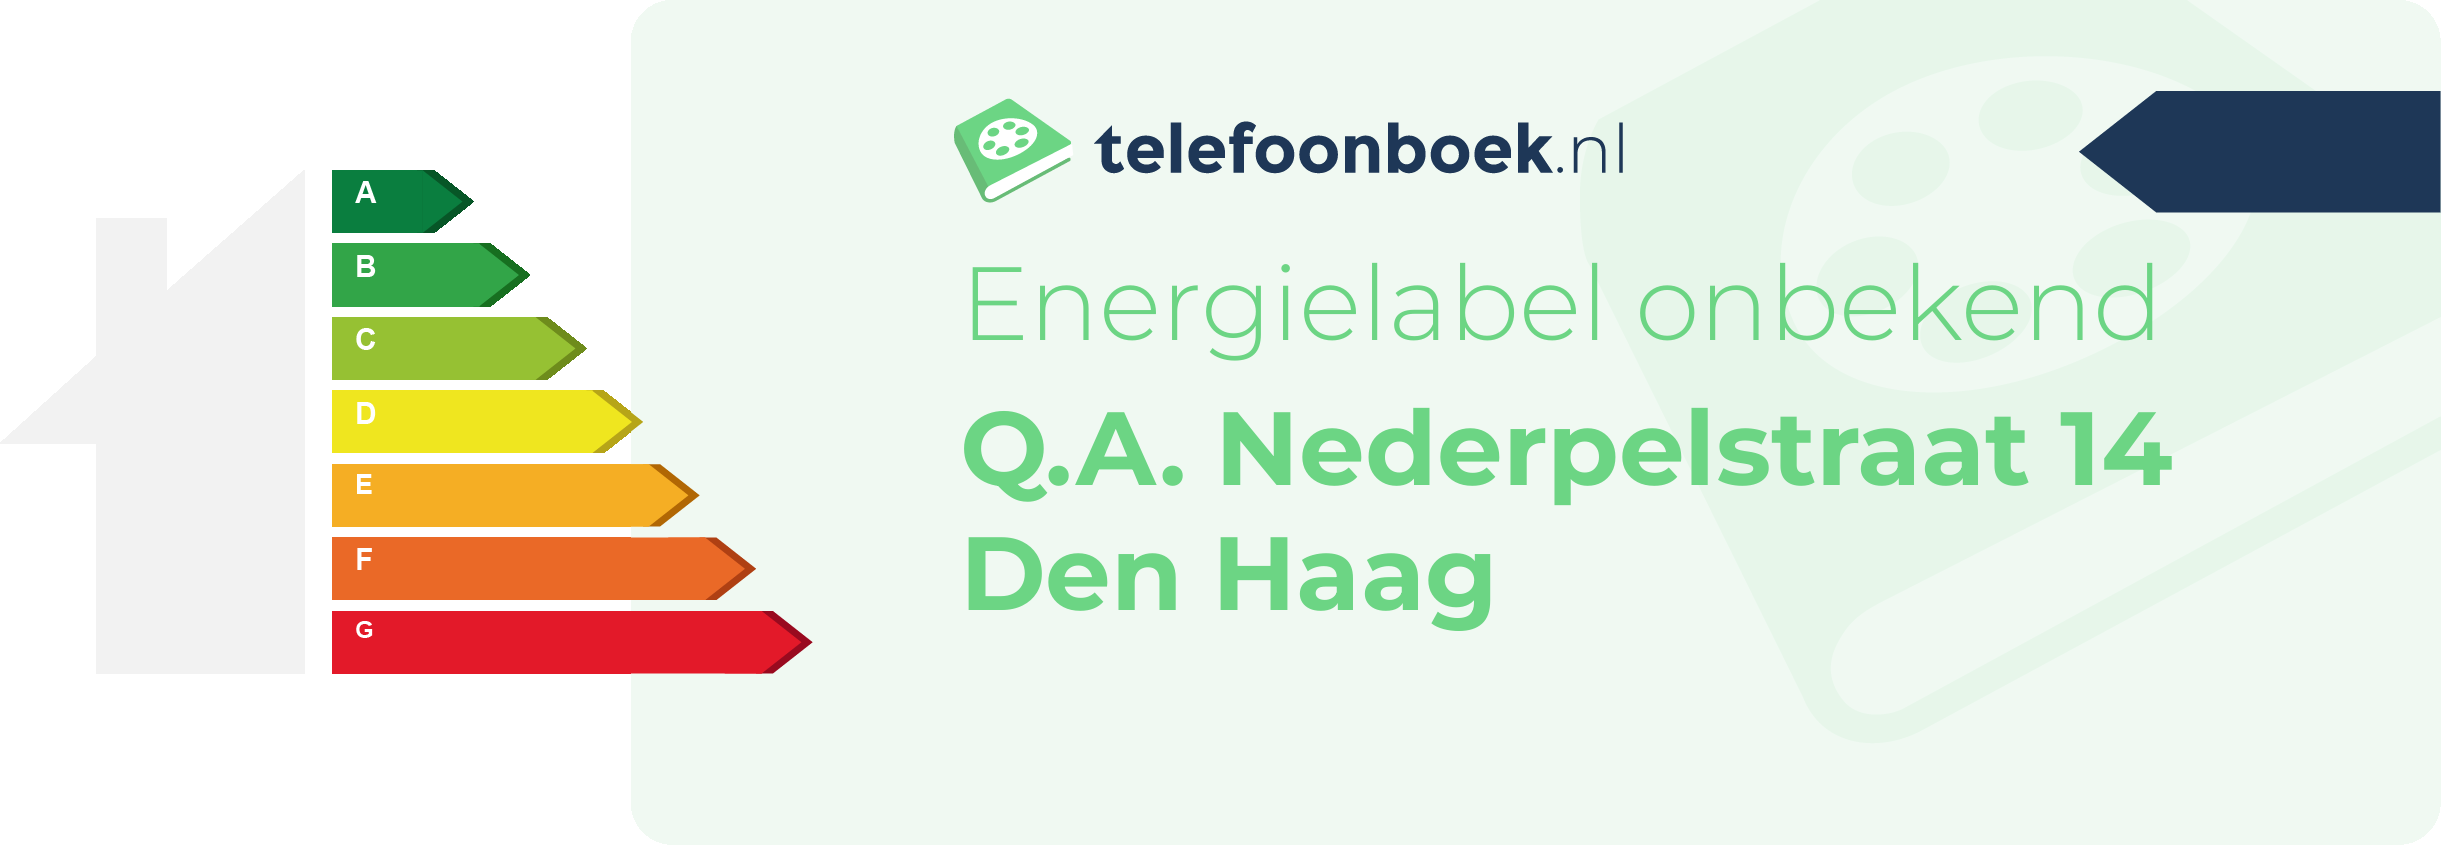 Energielabel Q.A. Nederpelstraat 14 Den Haag